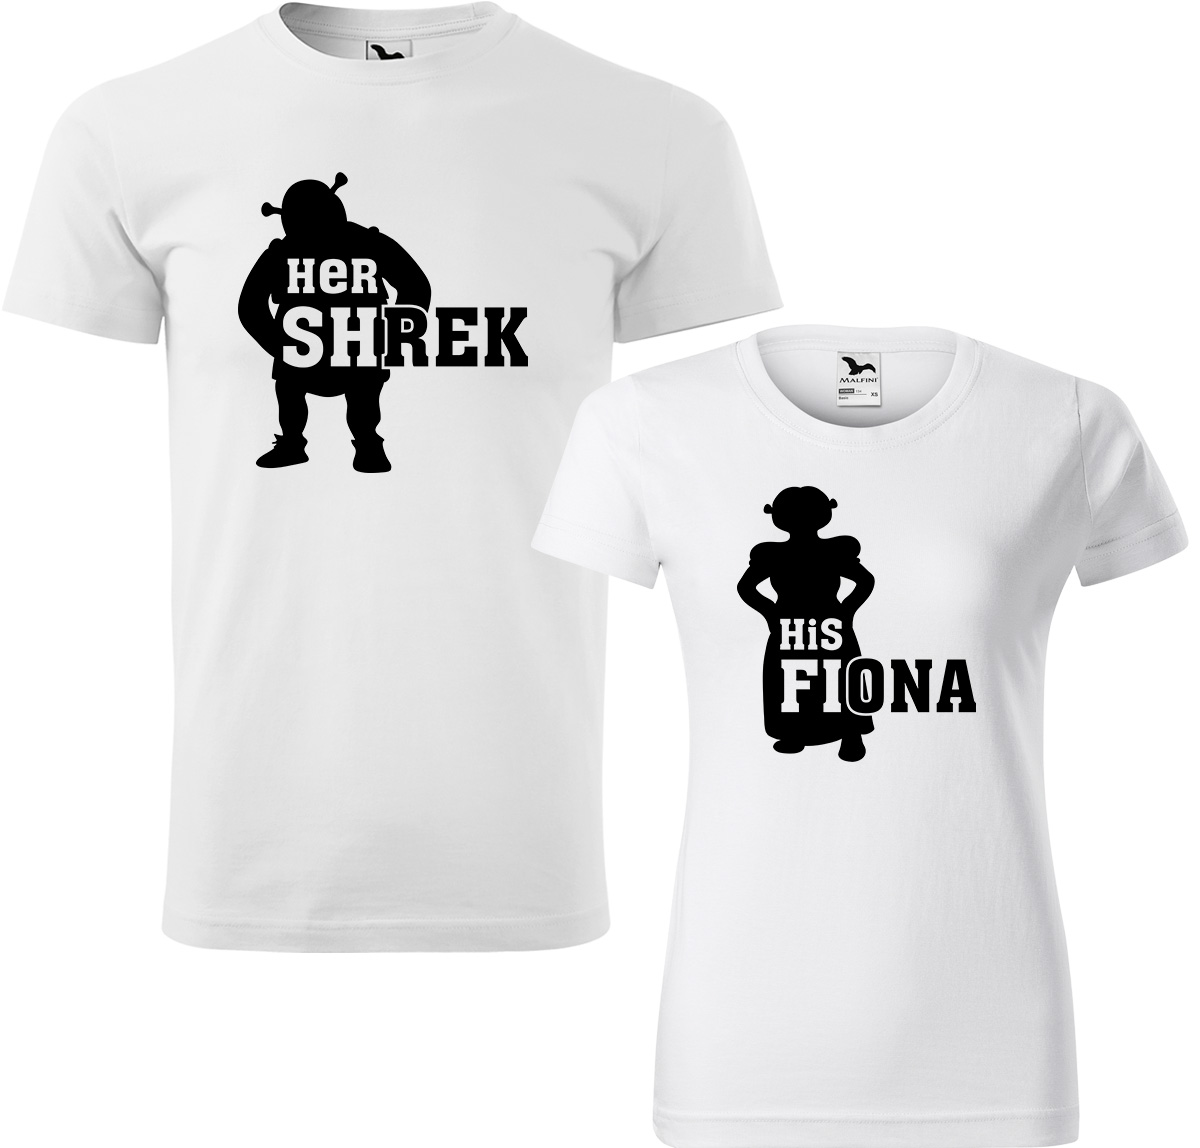 Trička pro páry - Shrek a Fiona Barva: Bílá (00), Velikost dámské tričko: S, Velikost pánské tričko: S